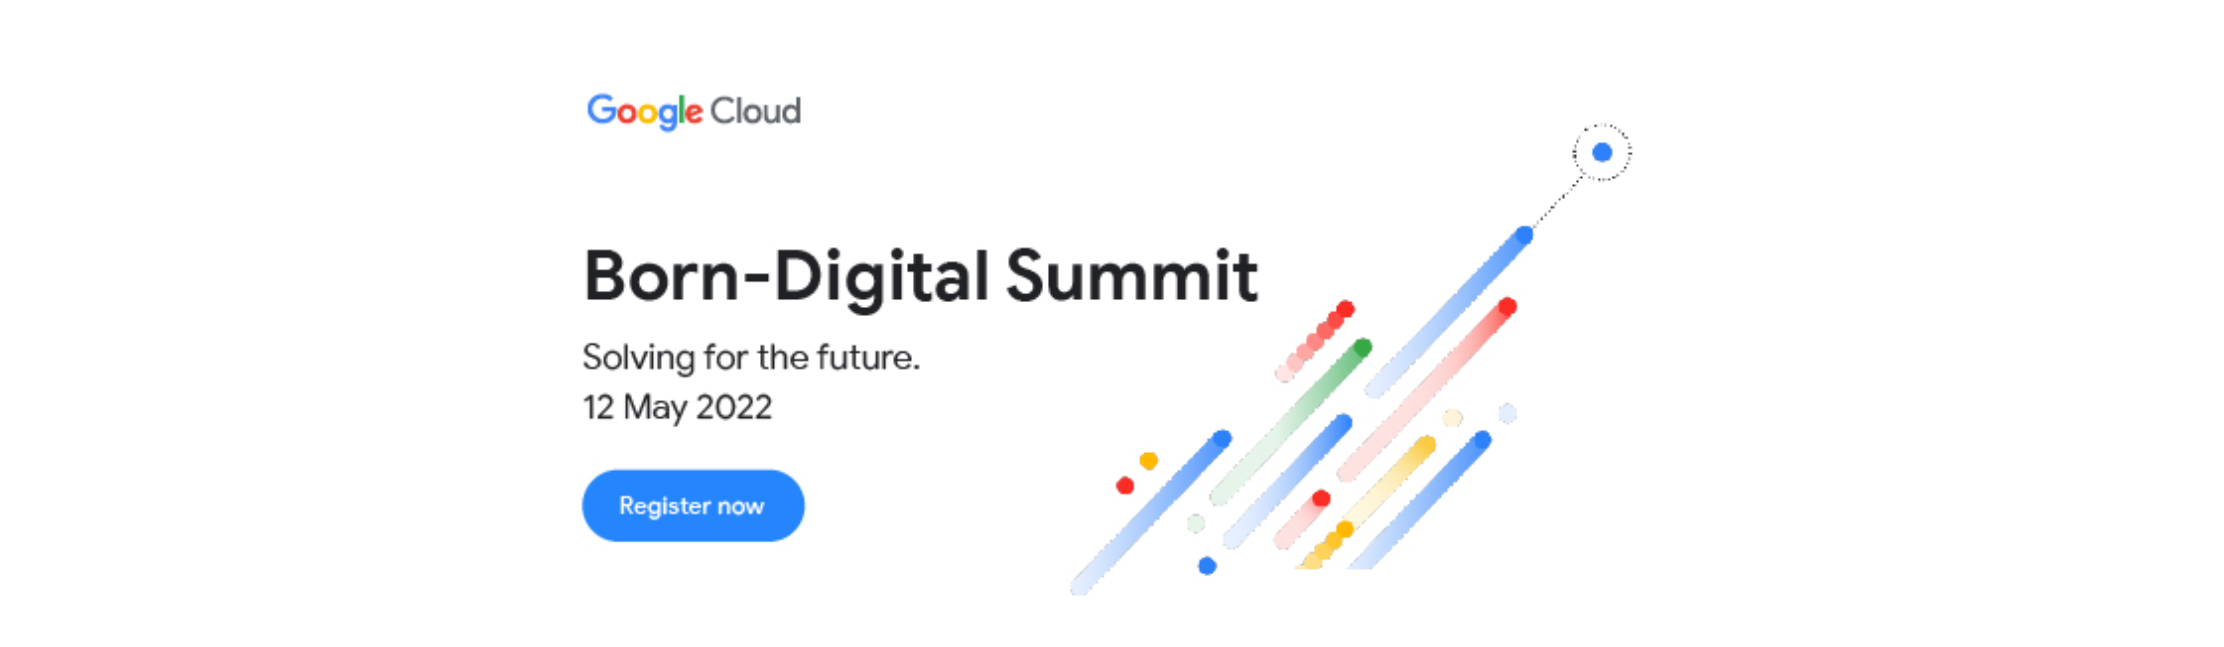 born-digital-summit.png